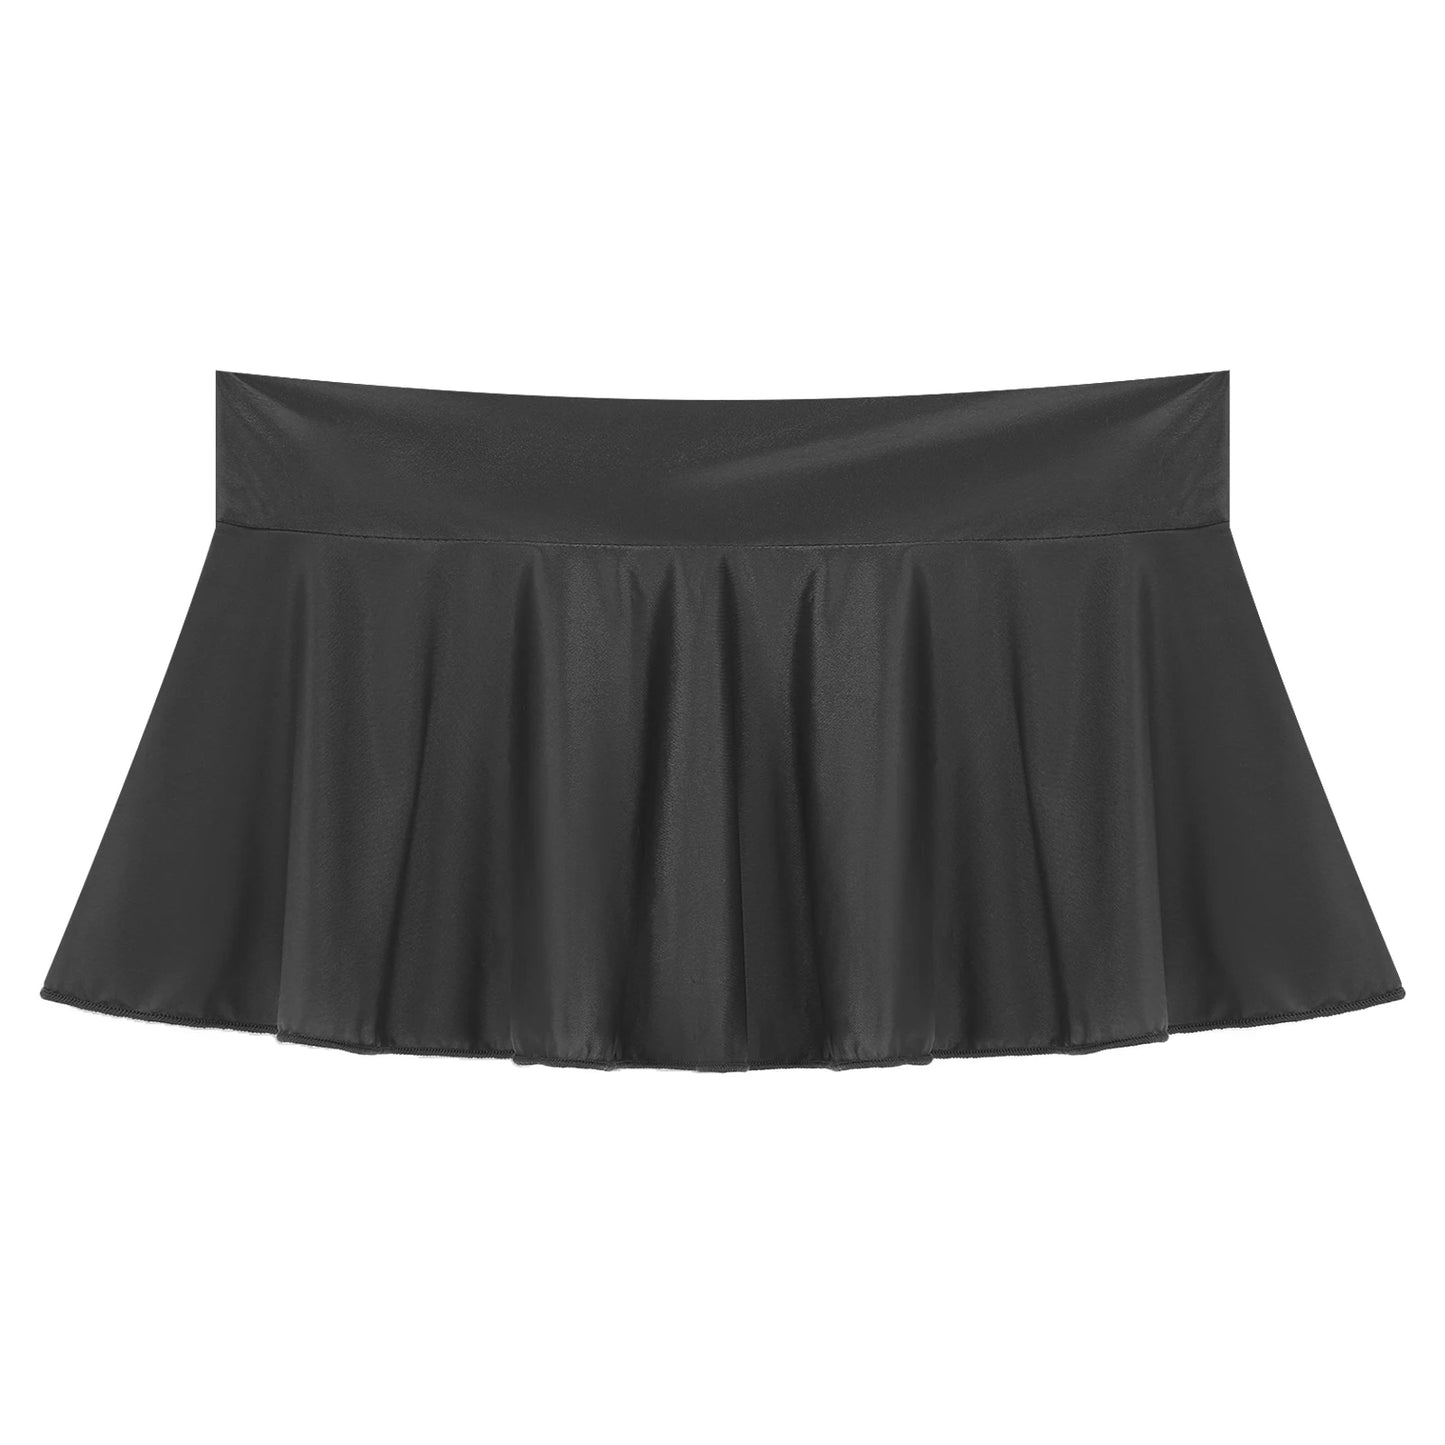 skirty (Black micromini skirt)